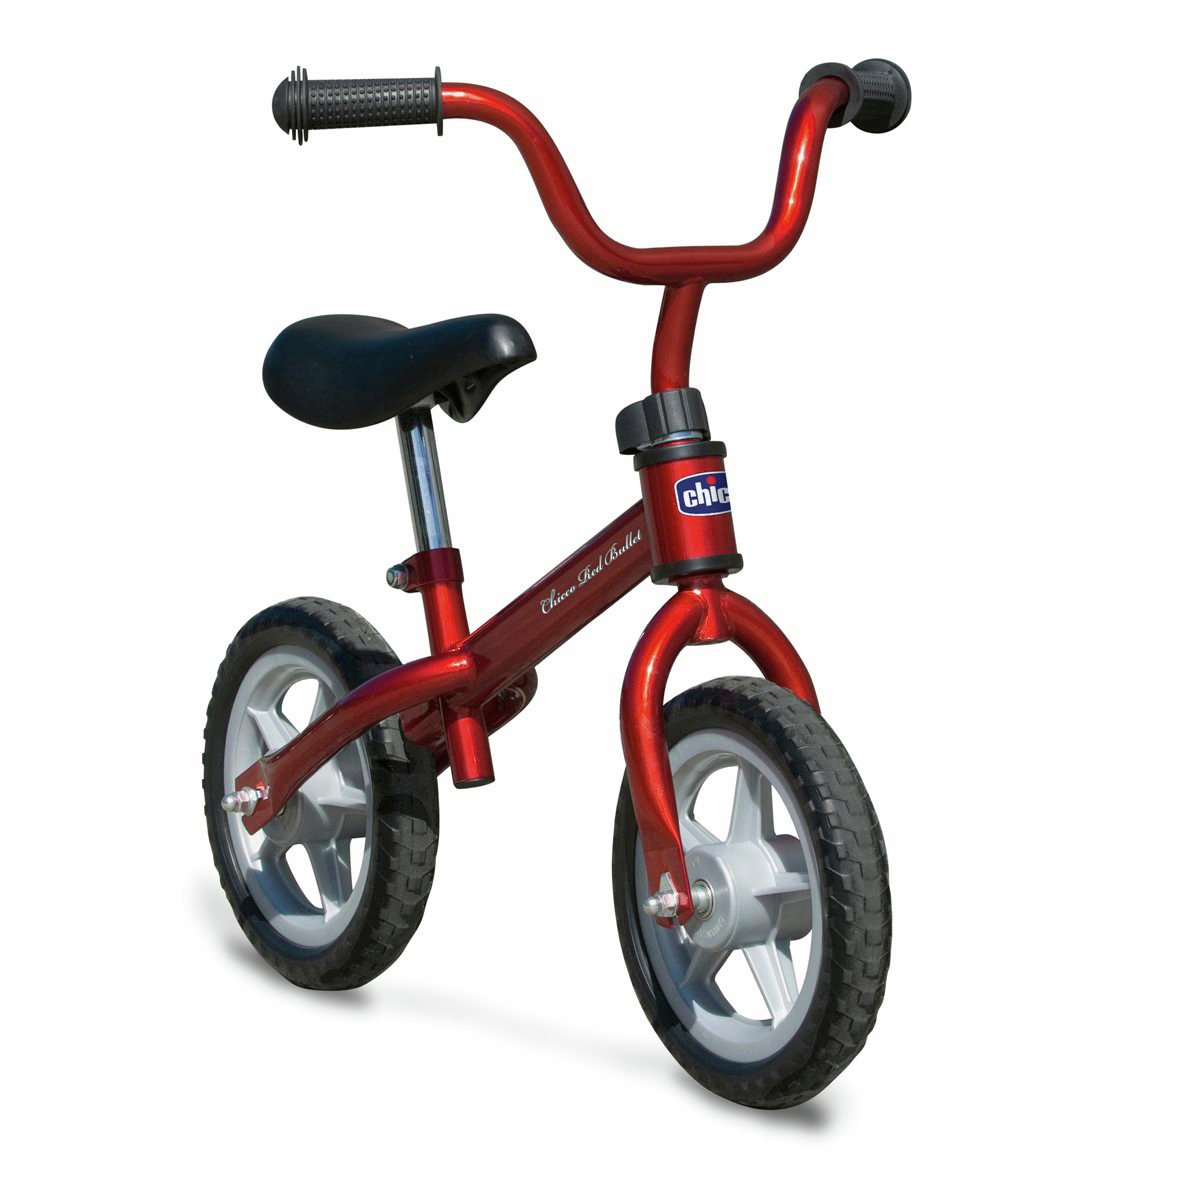 balance bike for kids